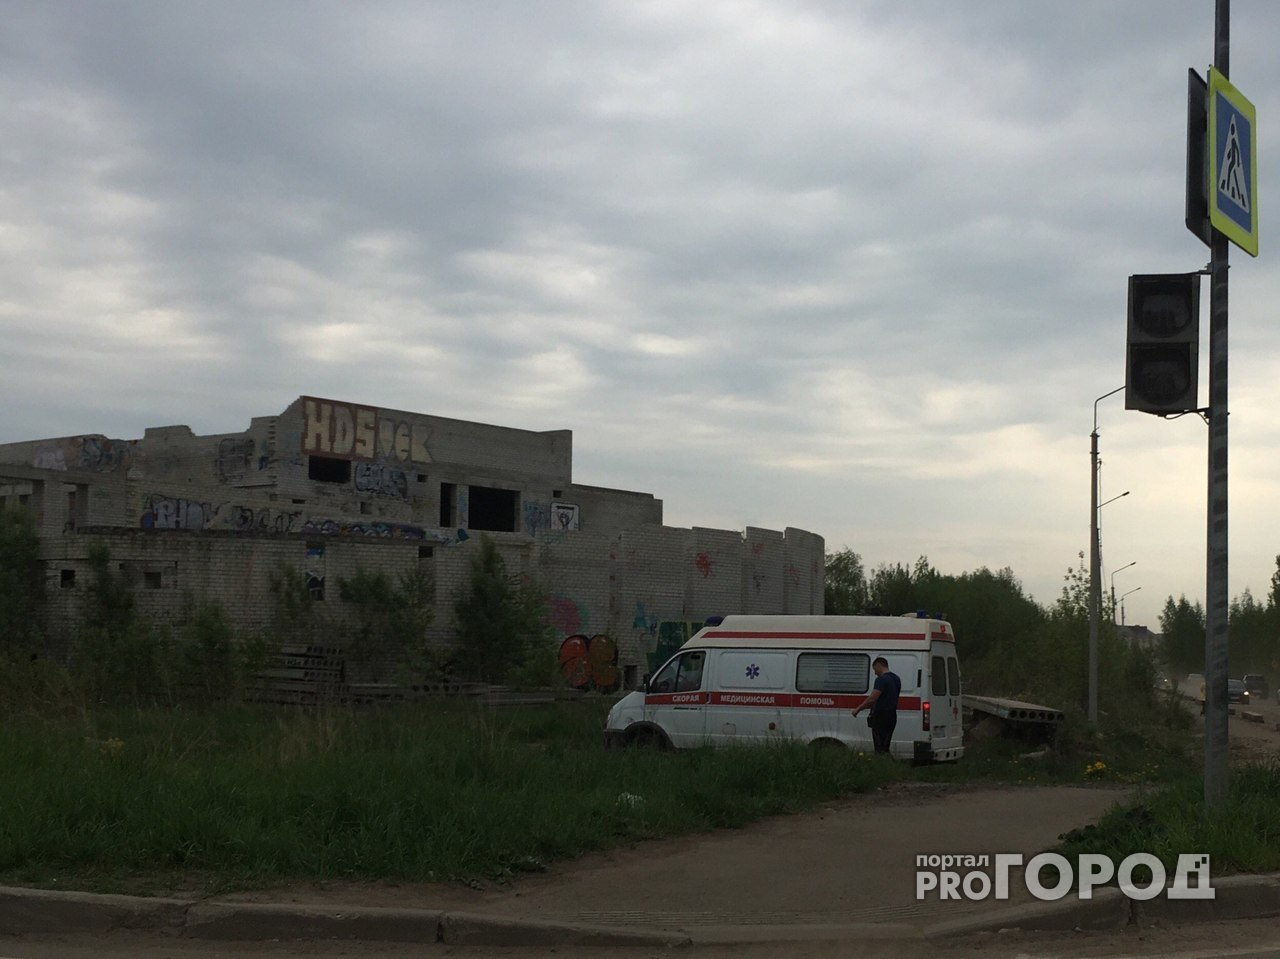 Опасный долгострой: в Ярославле ребенок рухнул с третьего этажа заброшенного здания